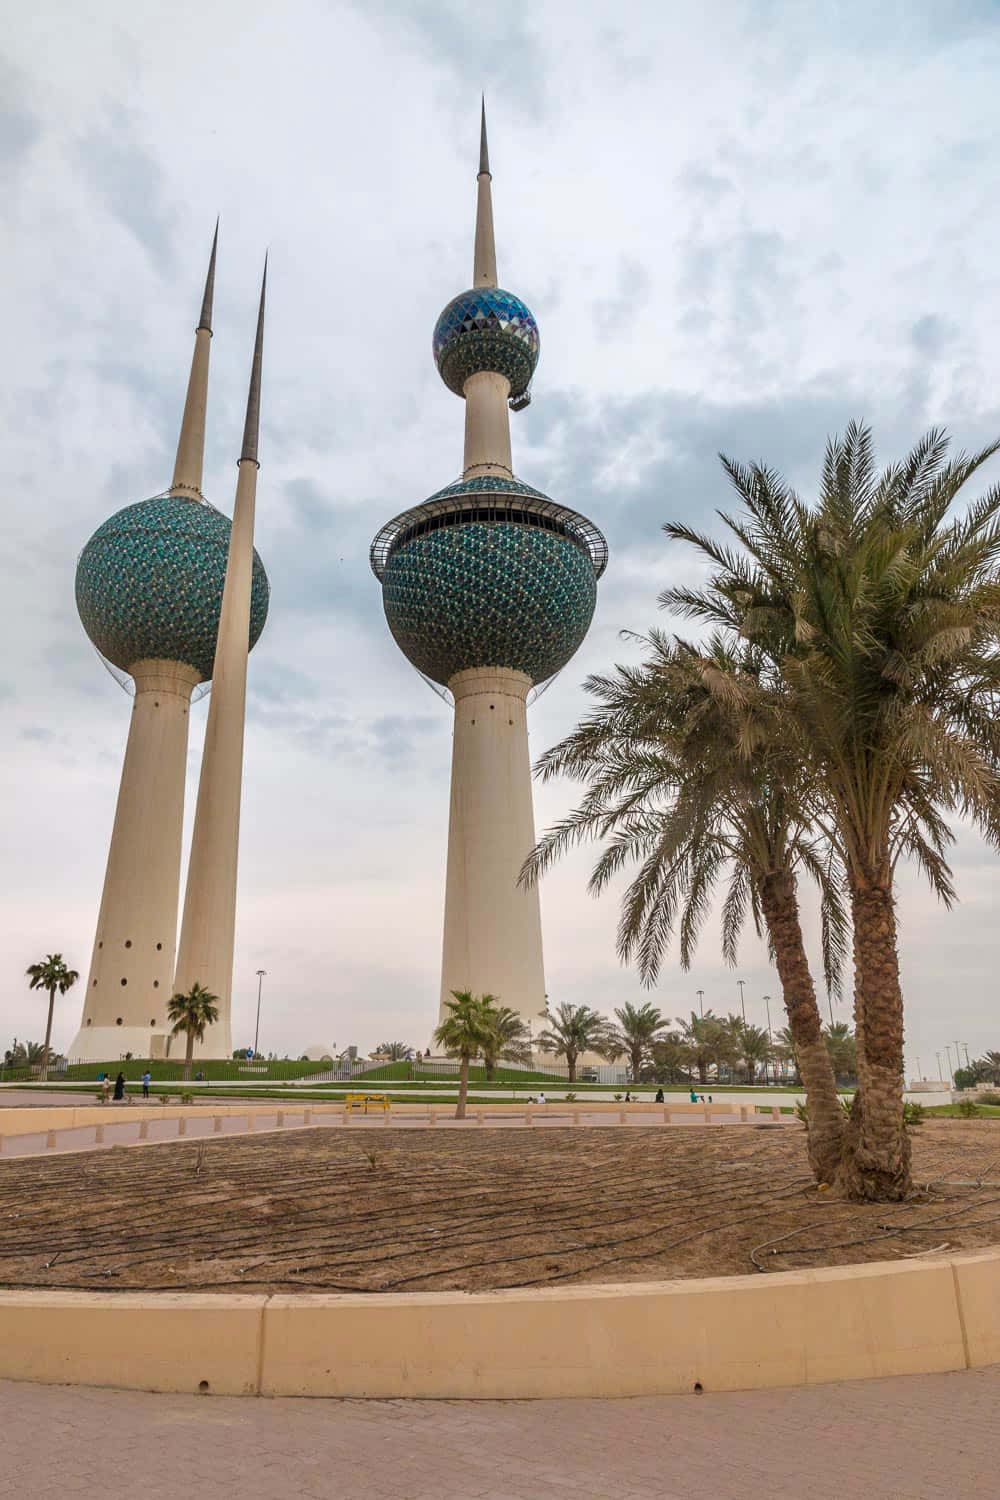 Fundo De Tela Para Celular Com Imagem Da Capa De Celular Em Marrom E Azul Das Torres Do Kuwait. Papel de Parede